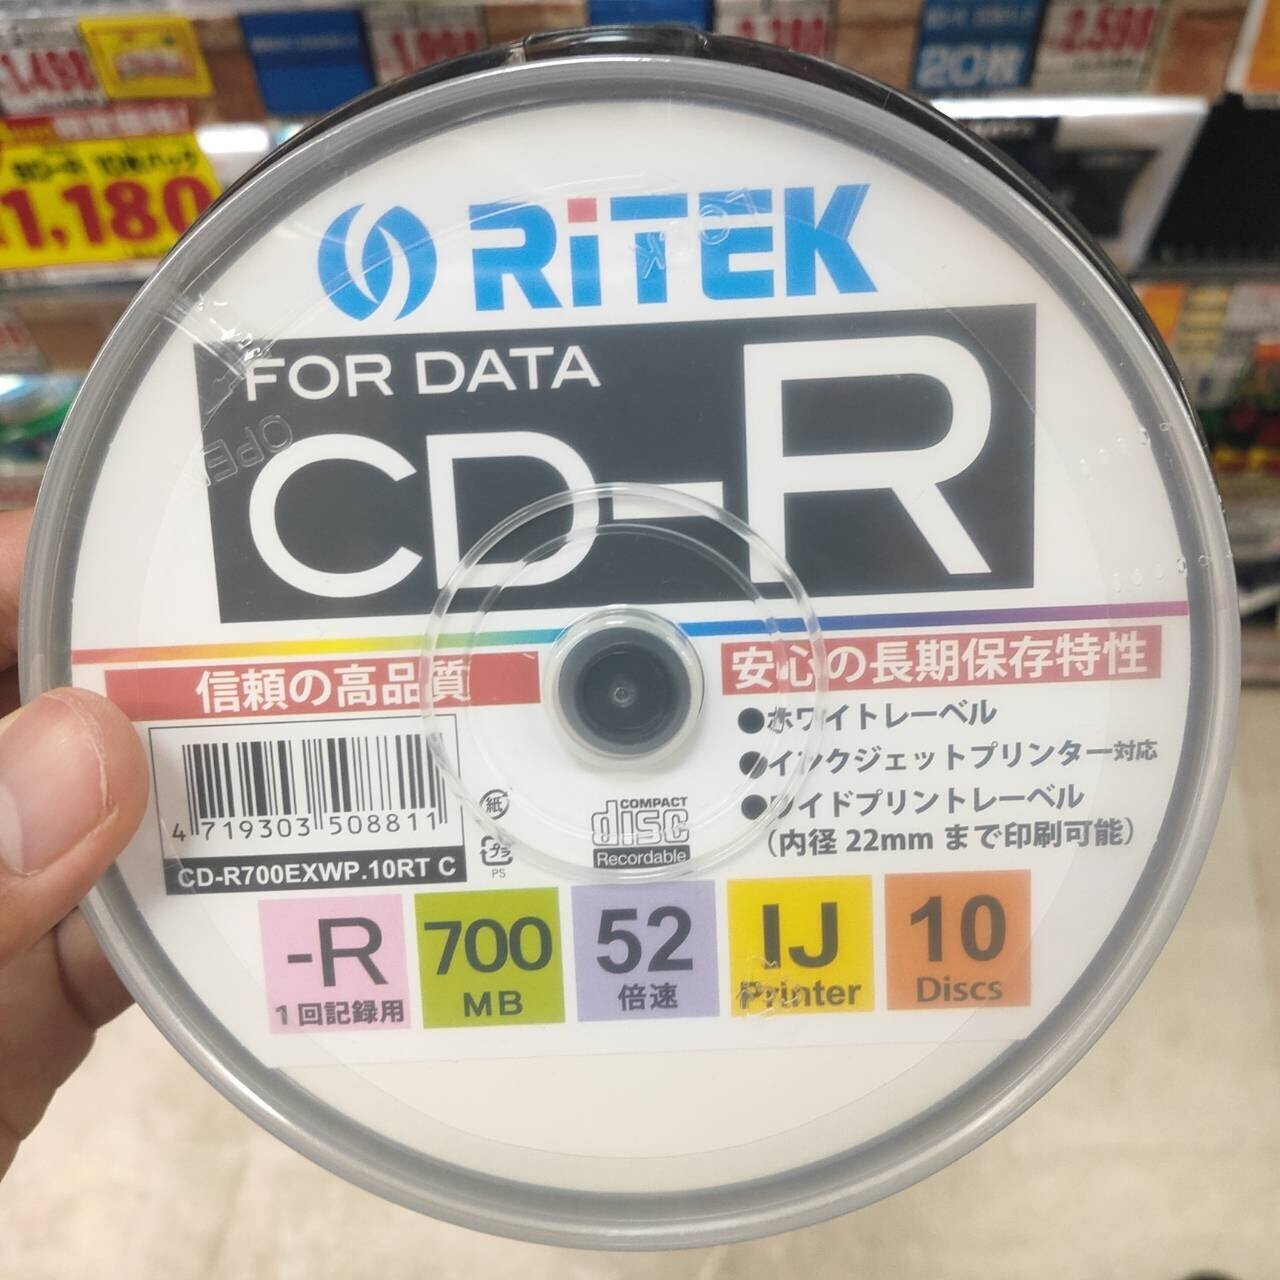 偉大な RiTEK CD-R700EXWP.10RT C